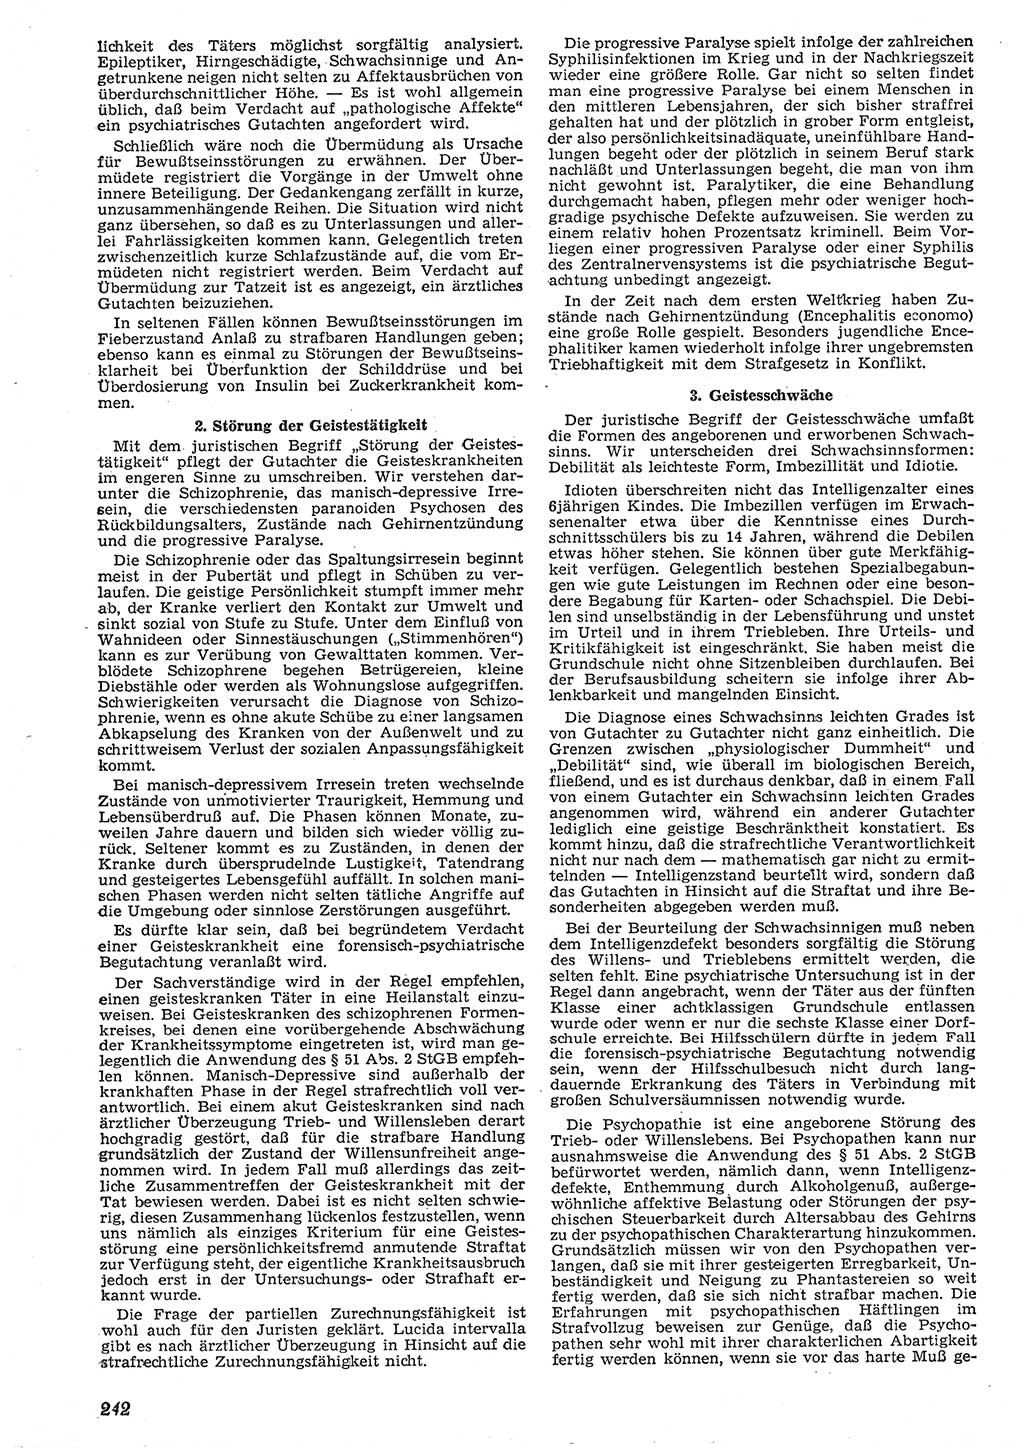 Neue Justiz (NJ), Zeitschrift für Recht und Rechtswissenschaft [Deutsche Demokratische Republik (DDR)], 10. Jahrgang 1956, Seite 242 (NJ DDR 1956, S. 242)